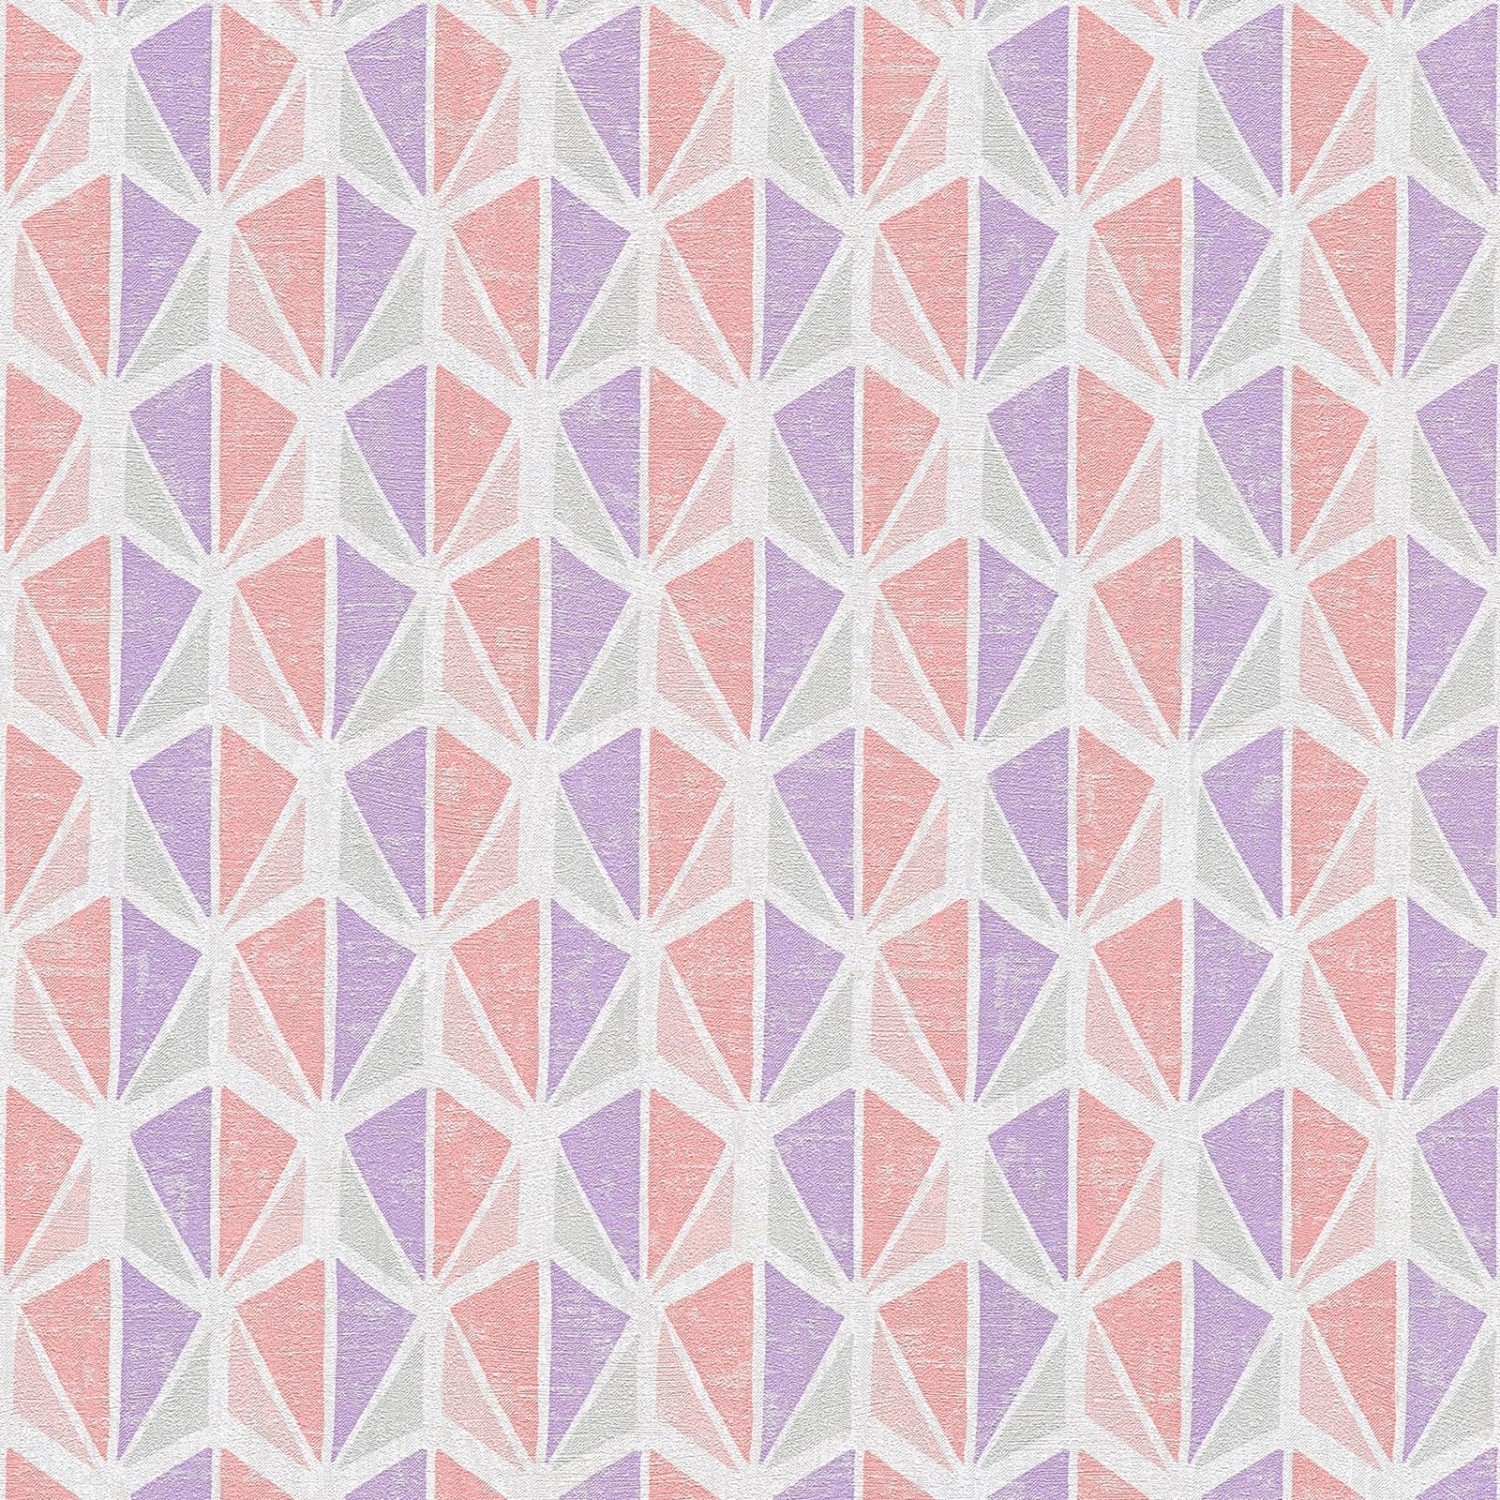 Bricoflor Retro Tapete in Leinenoptik Skandinavische Wohnzimmer und Schlafzimmer Vliestapete Geometrisch Vlies Leinentapete in Lila Weiß Rosa von Bricoflor